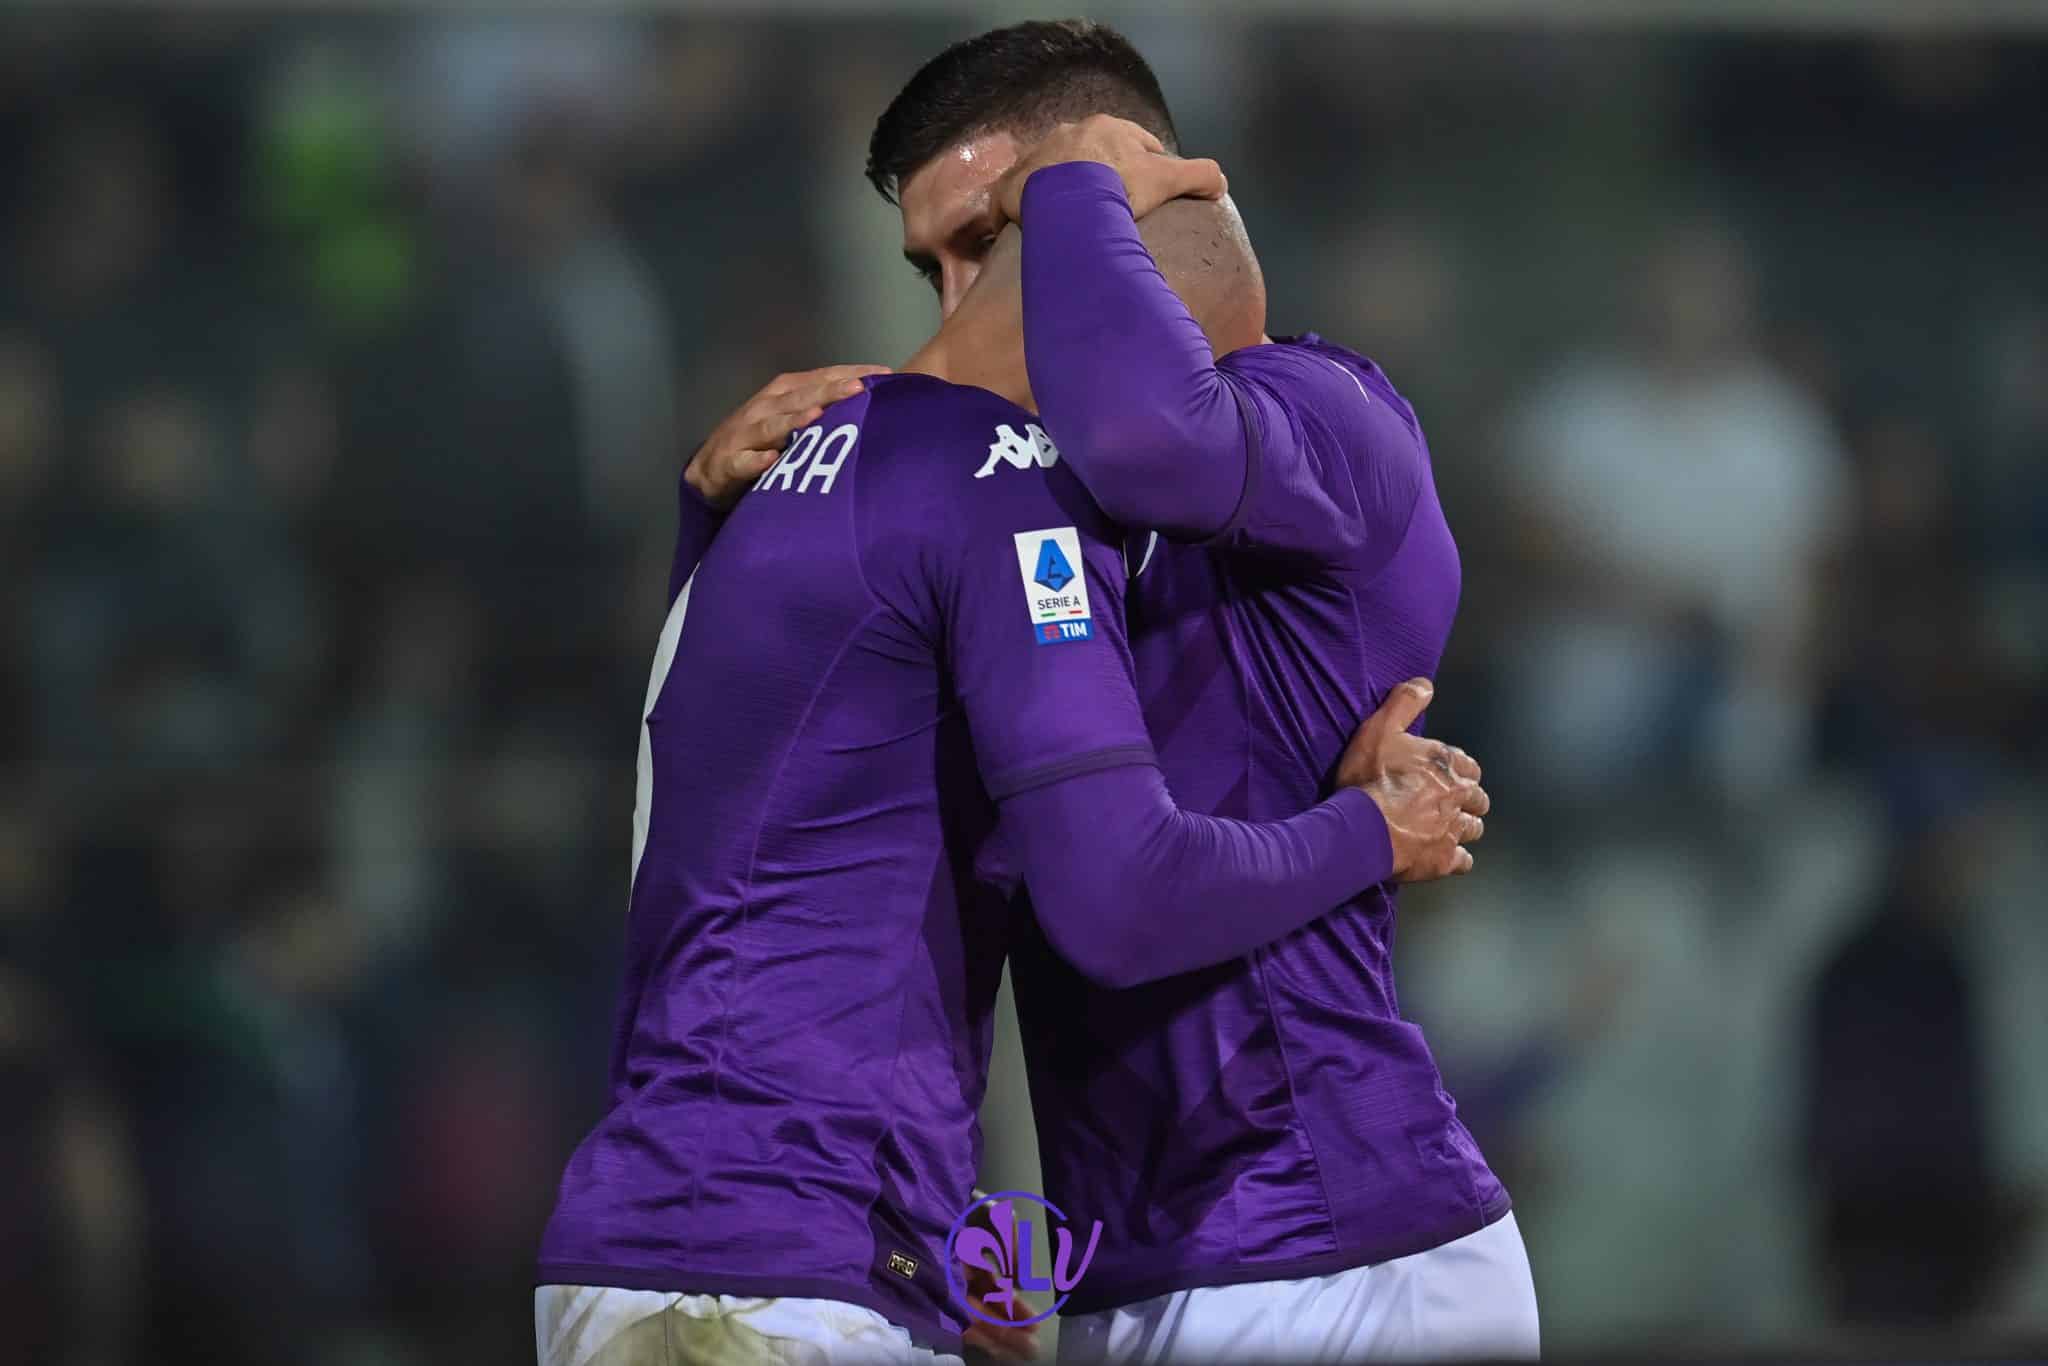 Partie violette au Franchi, la Fiorentina s&rsquo;impose 2-1 la dernière de l&rsquo;année à domicile.  Jovic signe le but gagnant